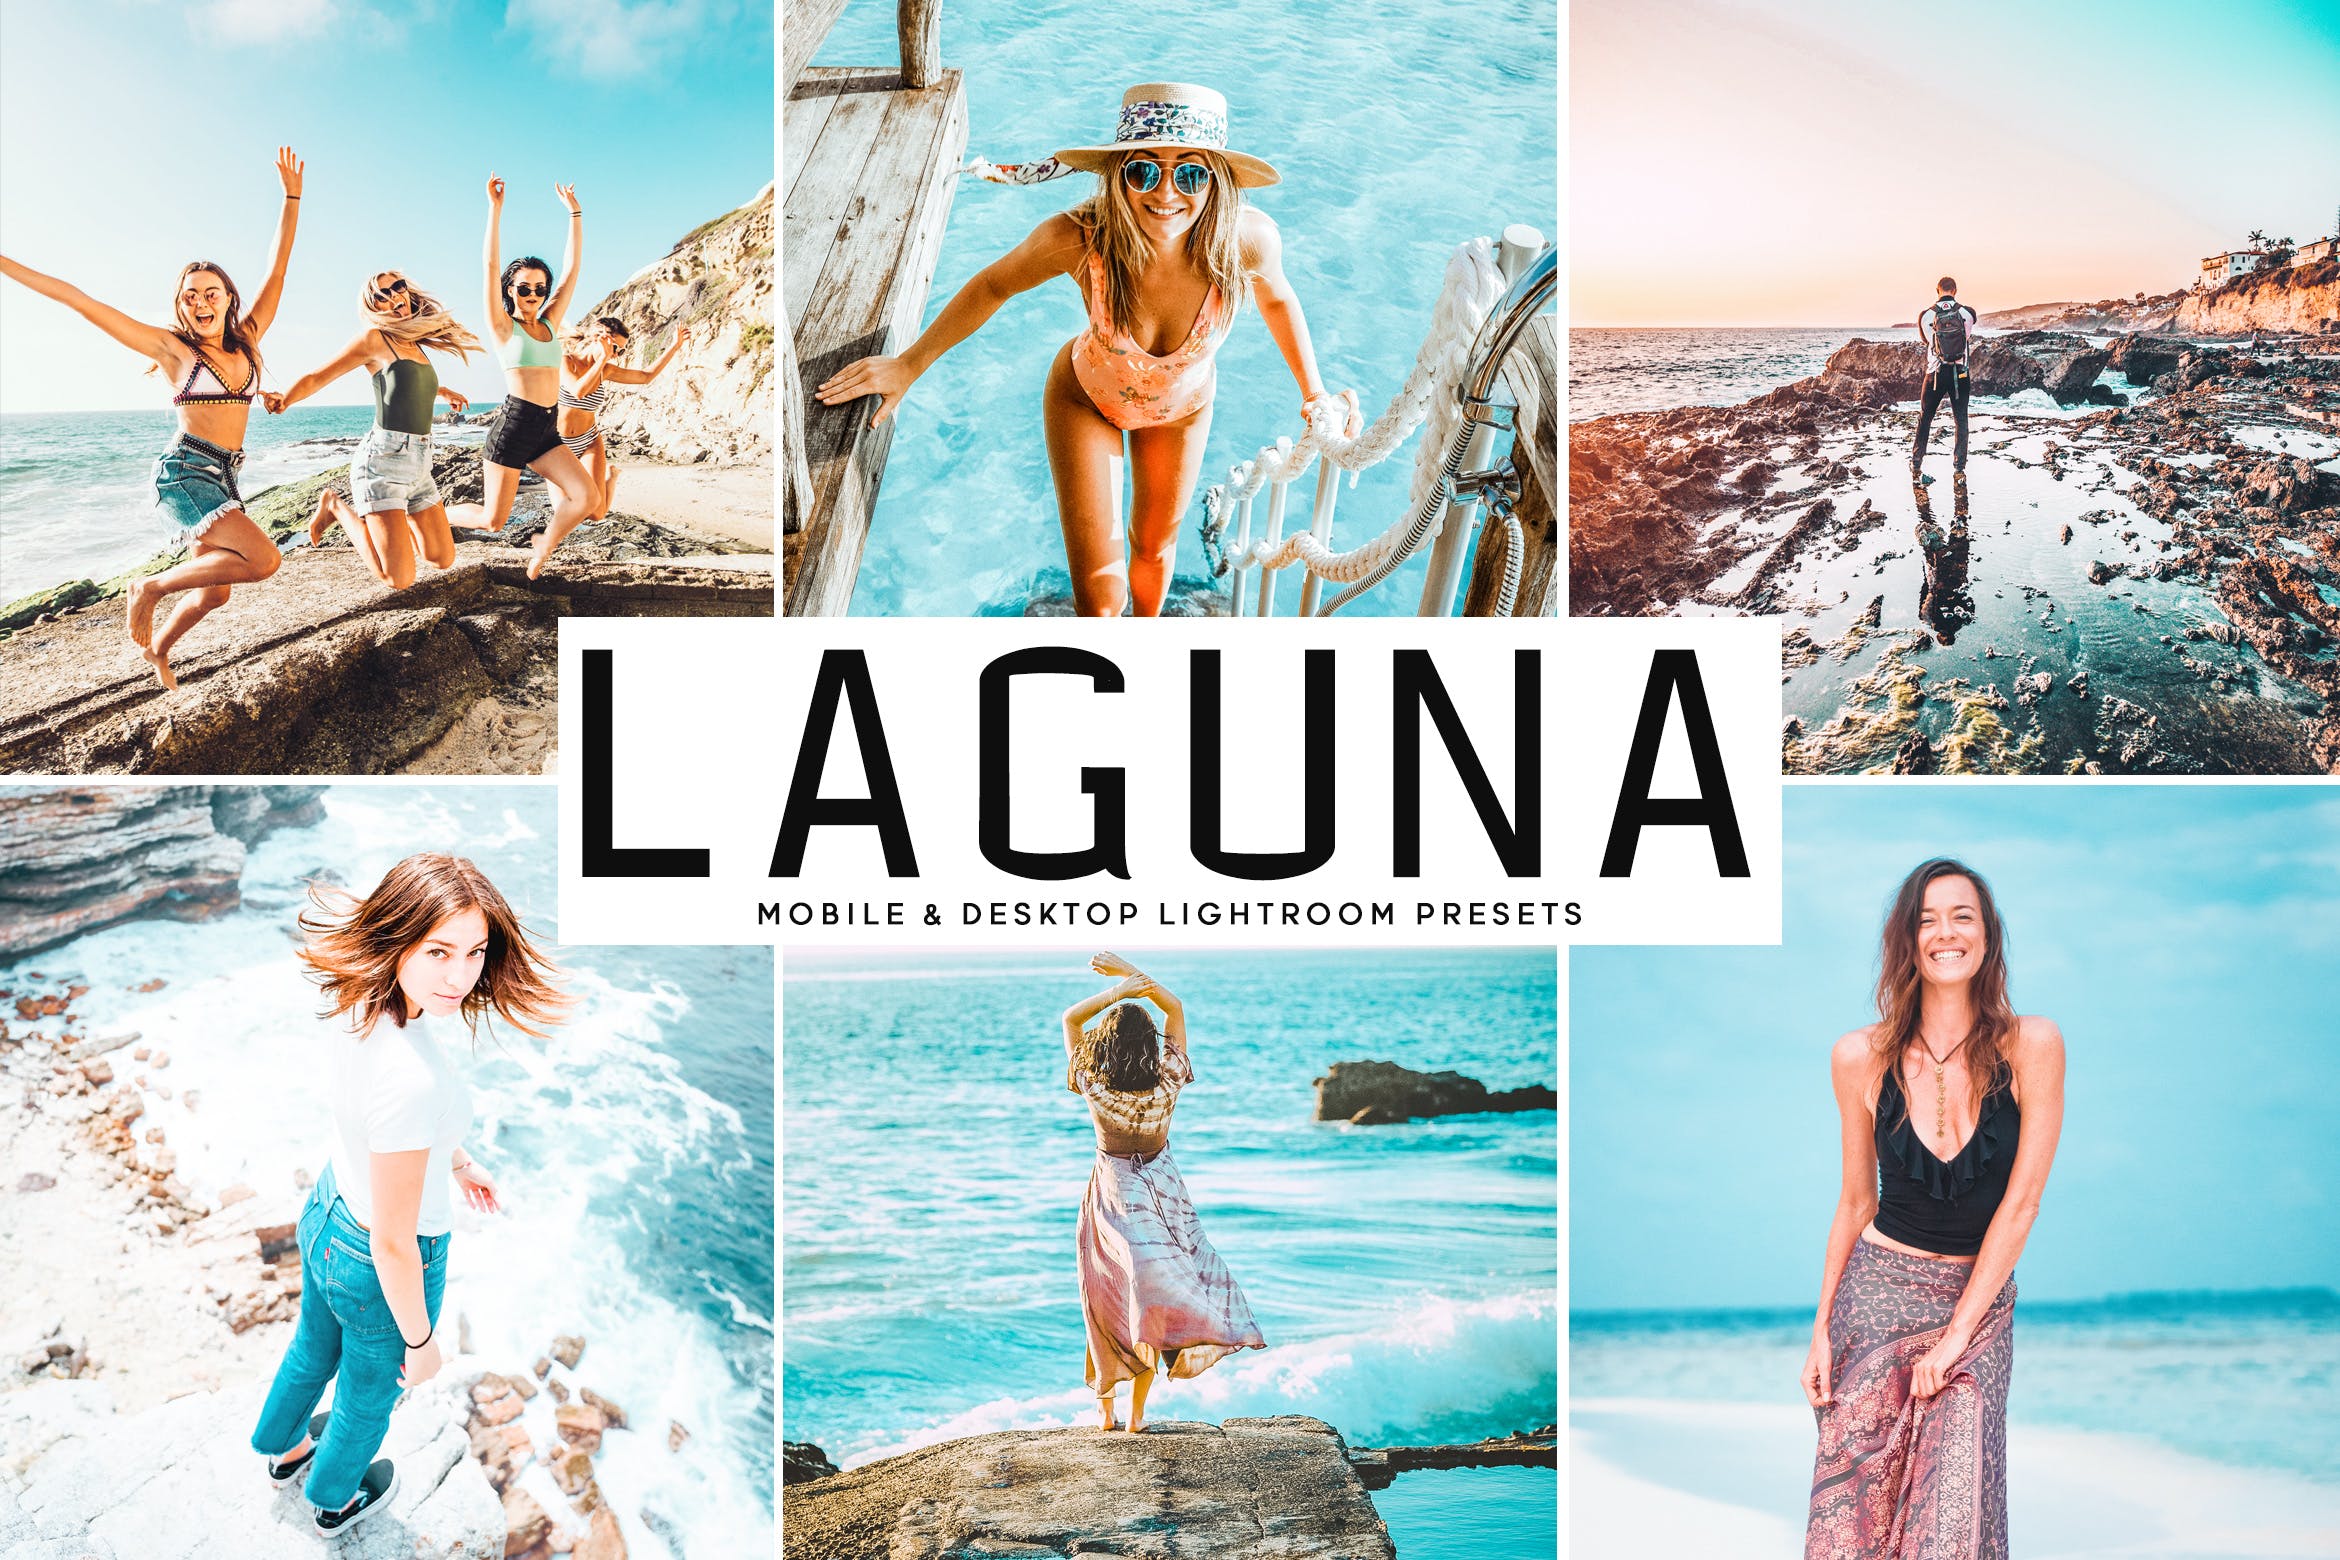 海洋海岛摄影绝配的调色滤镜大洋岛精选LR预设 Laguna Mobile & Desktop Lightroom Presets插图